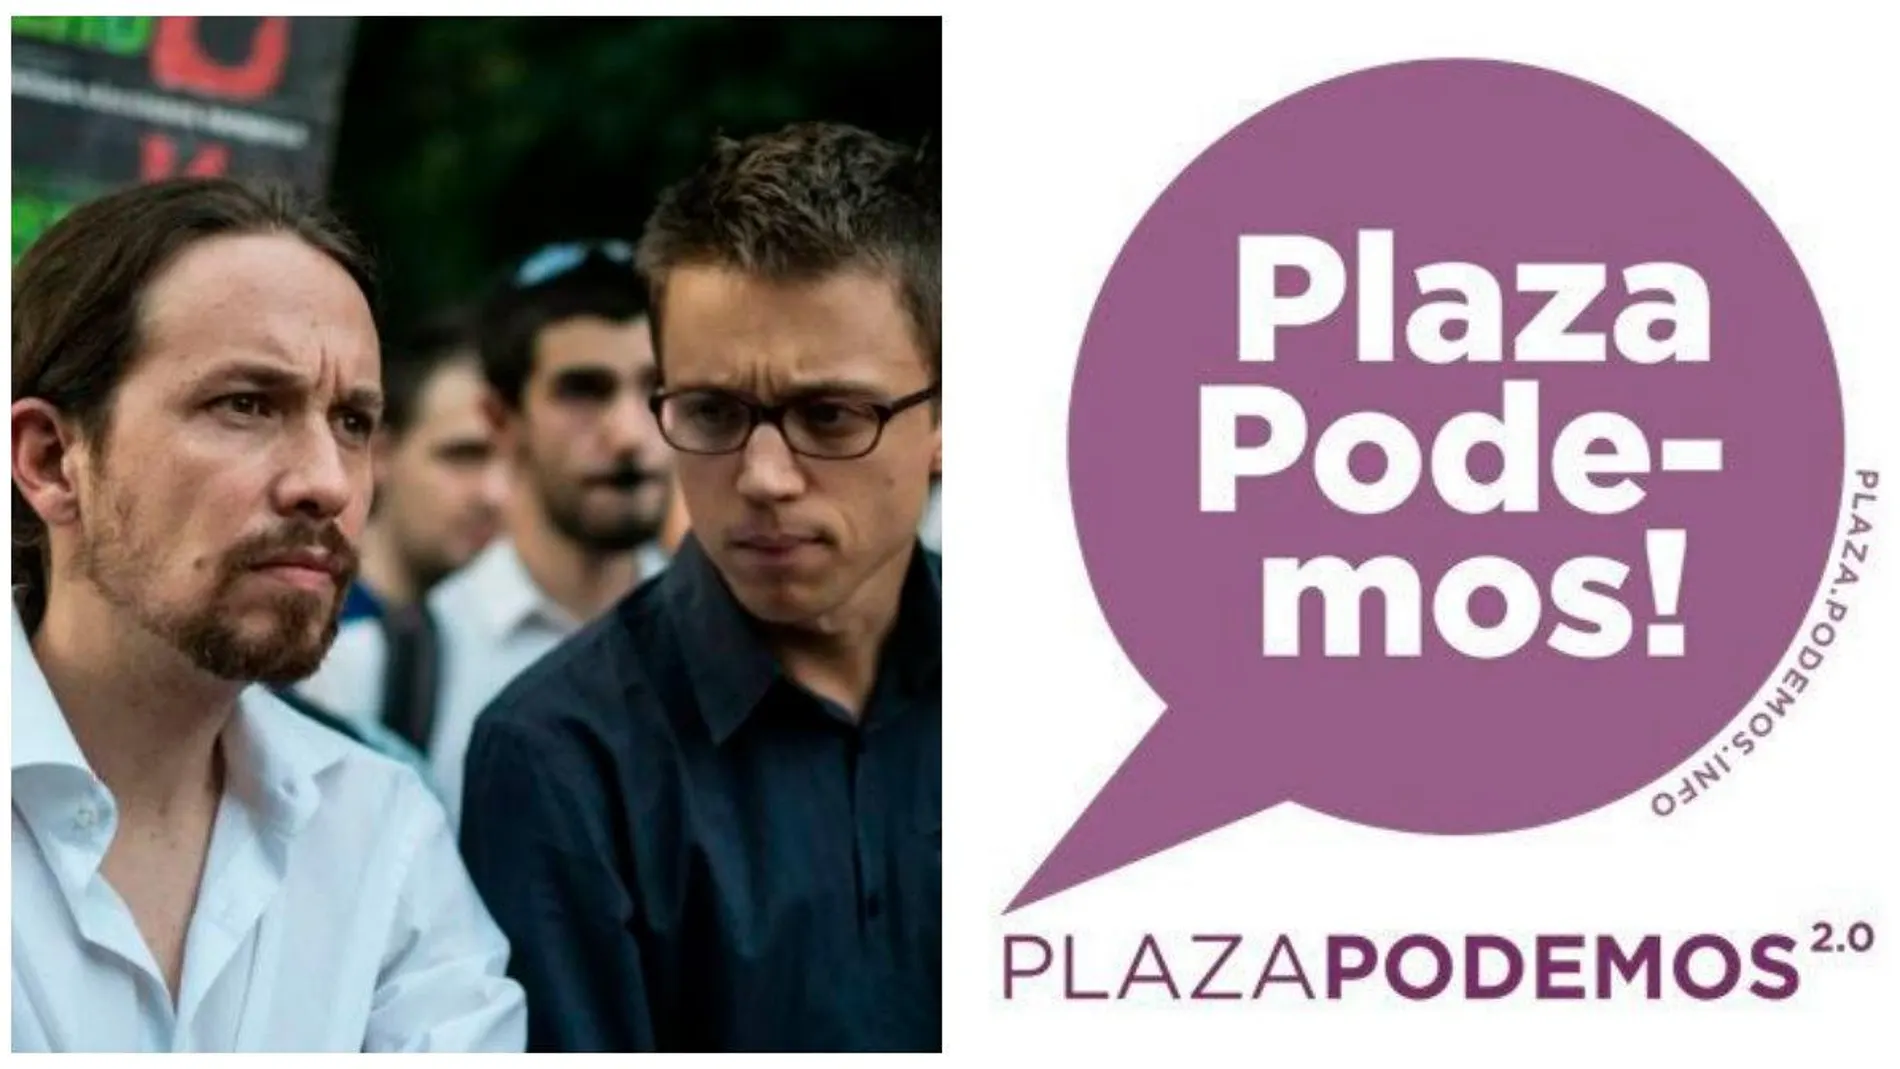 Los afines a Podemos calientan los foros contra Más Madrid.